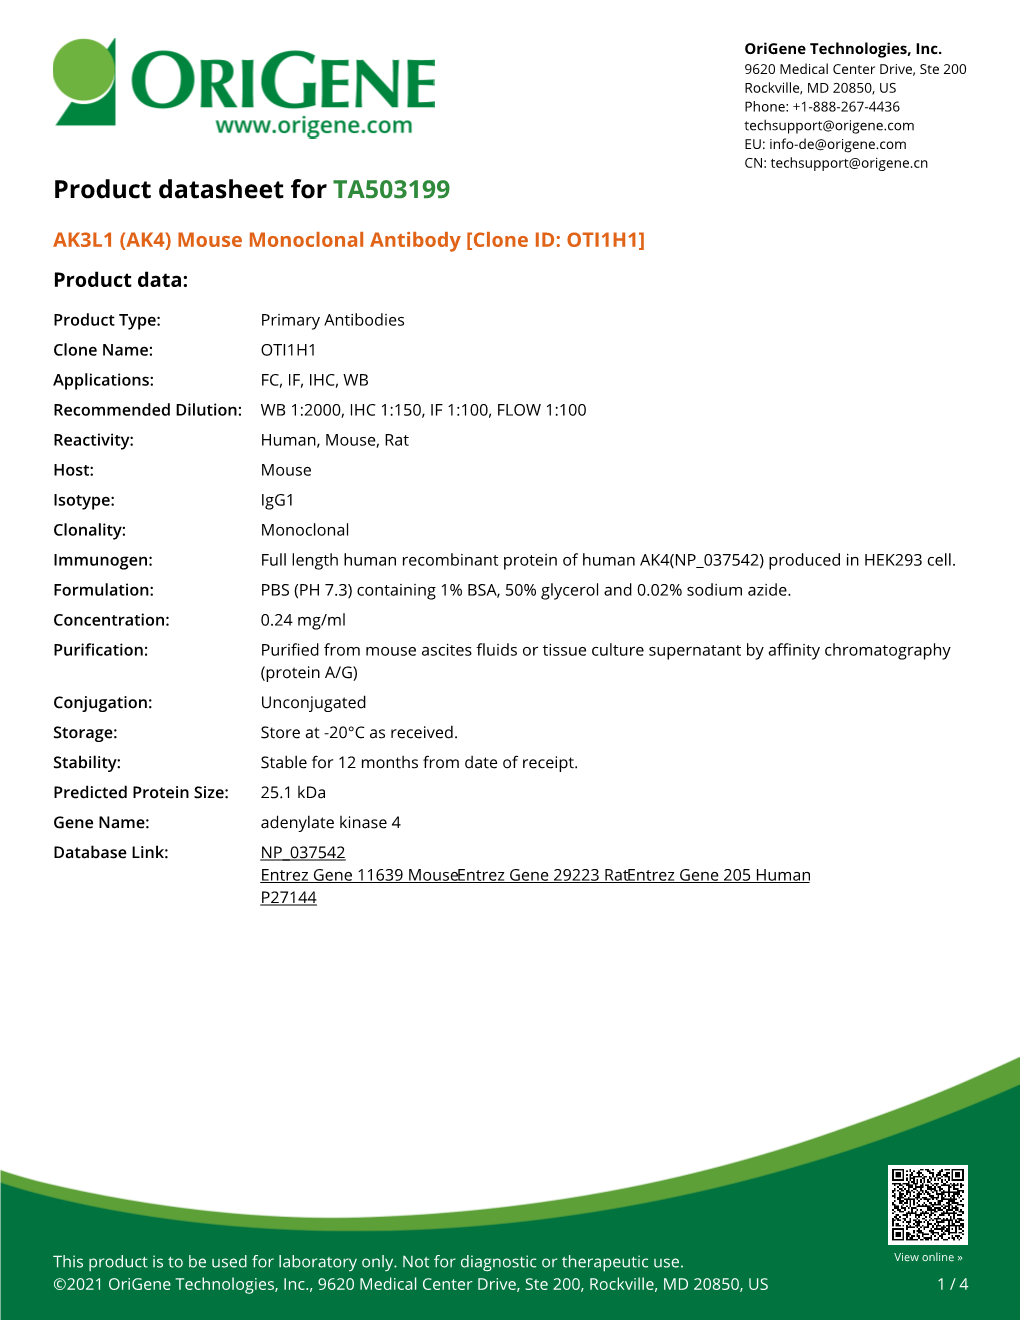 AK3L1 (AK4) Mouse Monoclonal Antibody [Clone ID: OTI1H1] Product Data